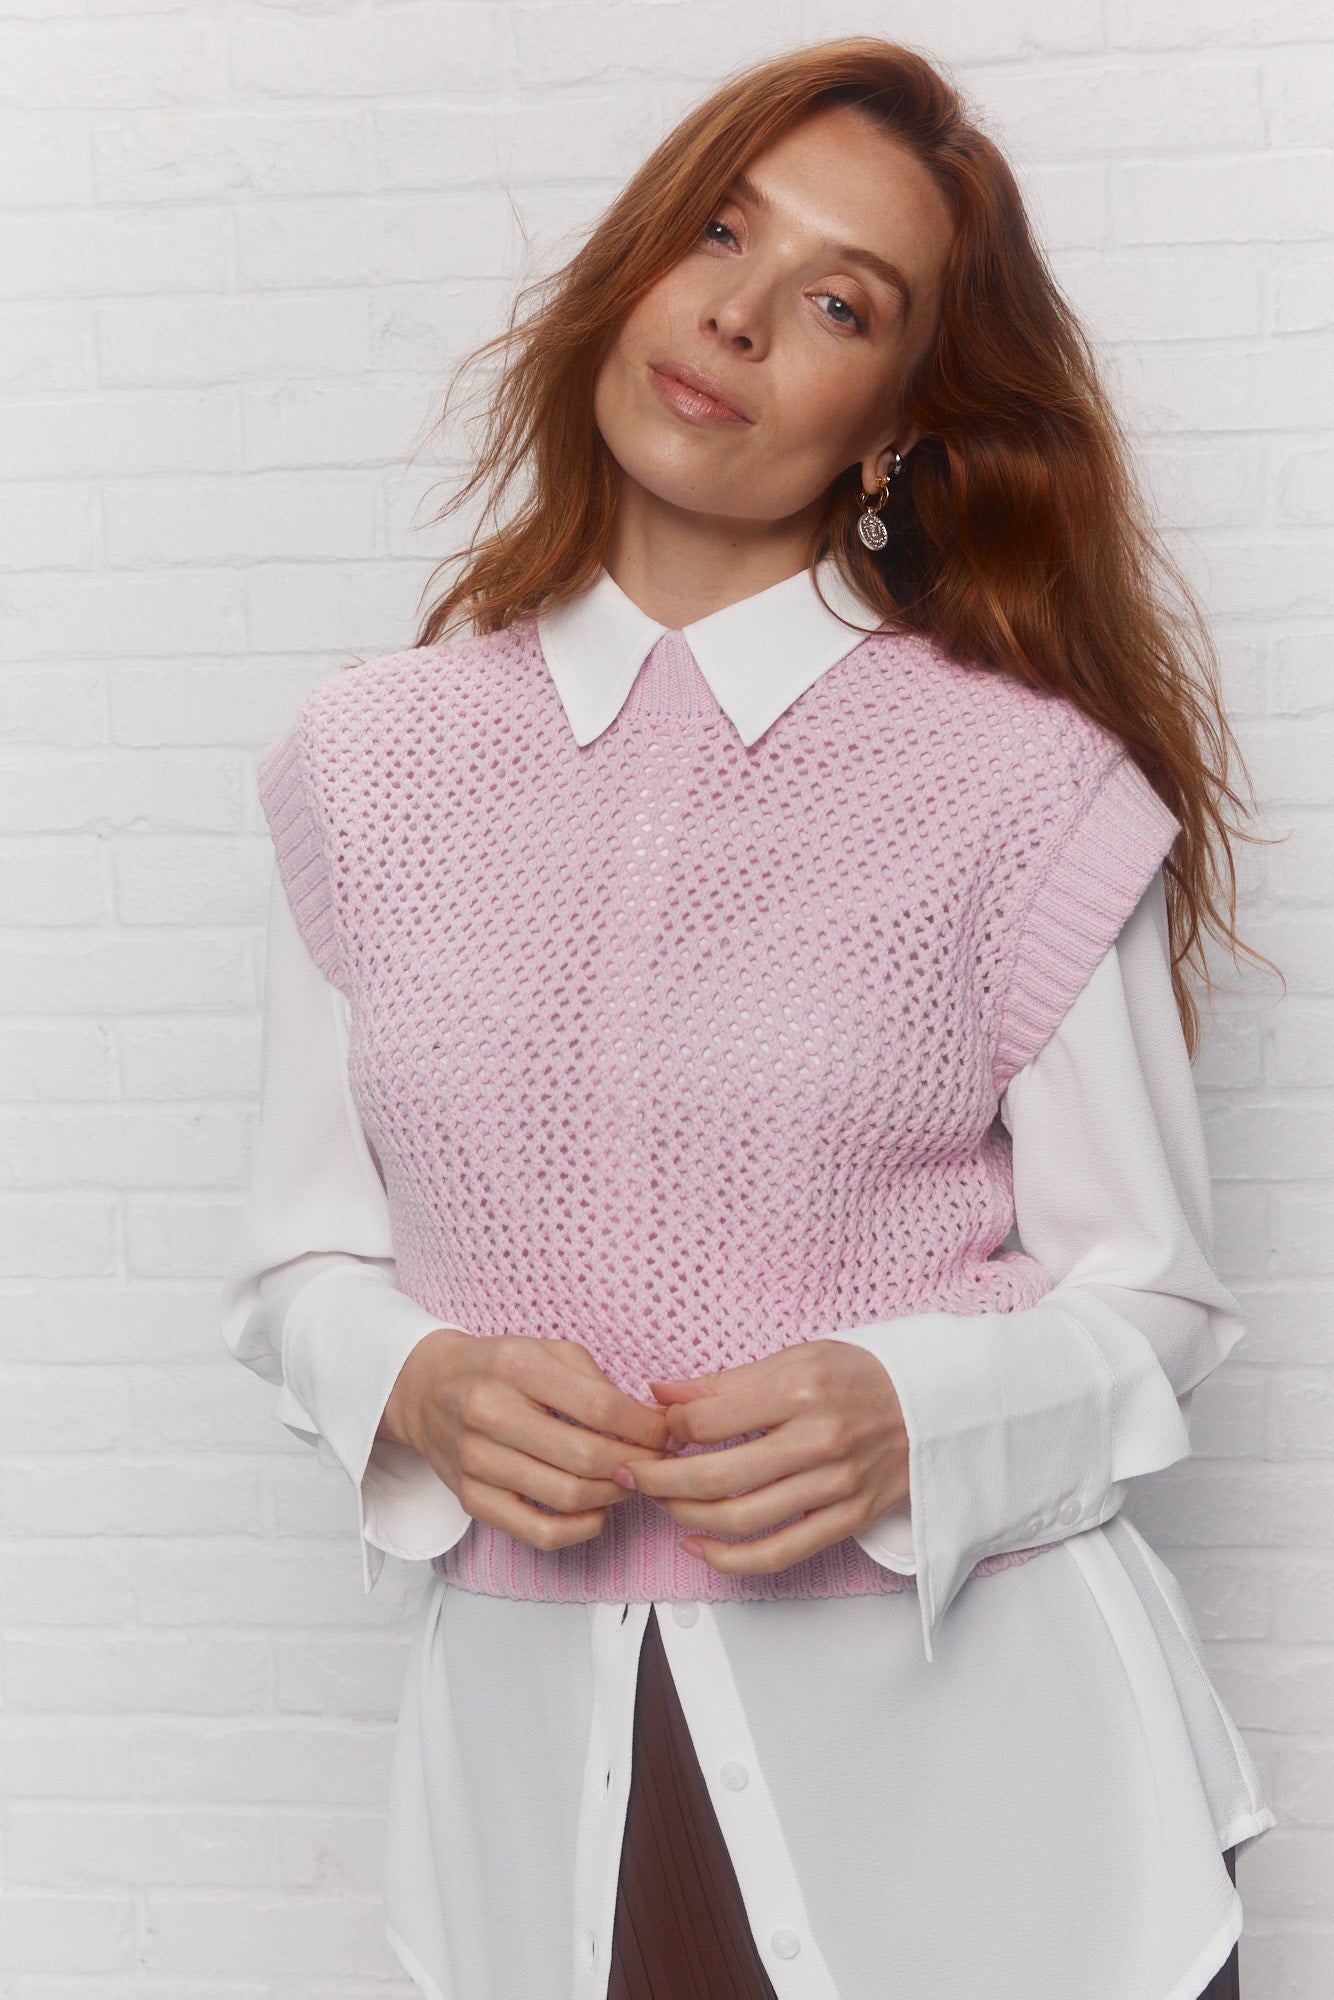 Pink cropped knit tank top | Malibu